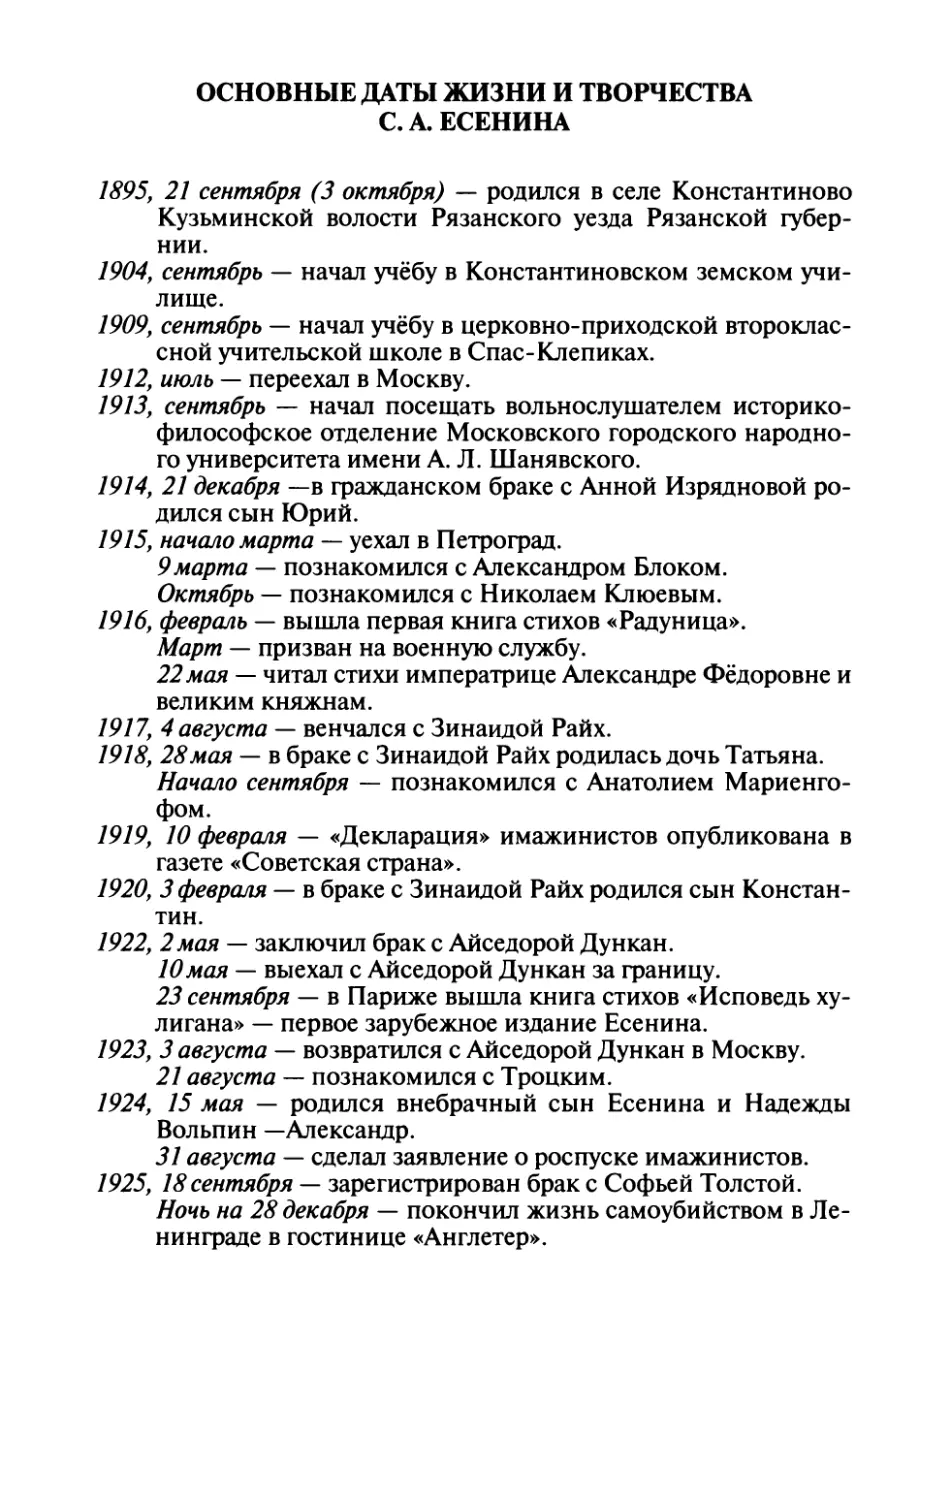 Основные даты жизни и творчества С. А. Есенина